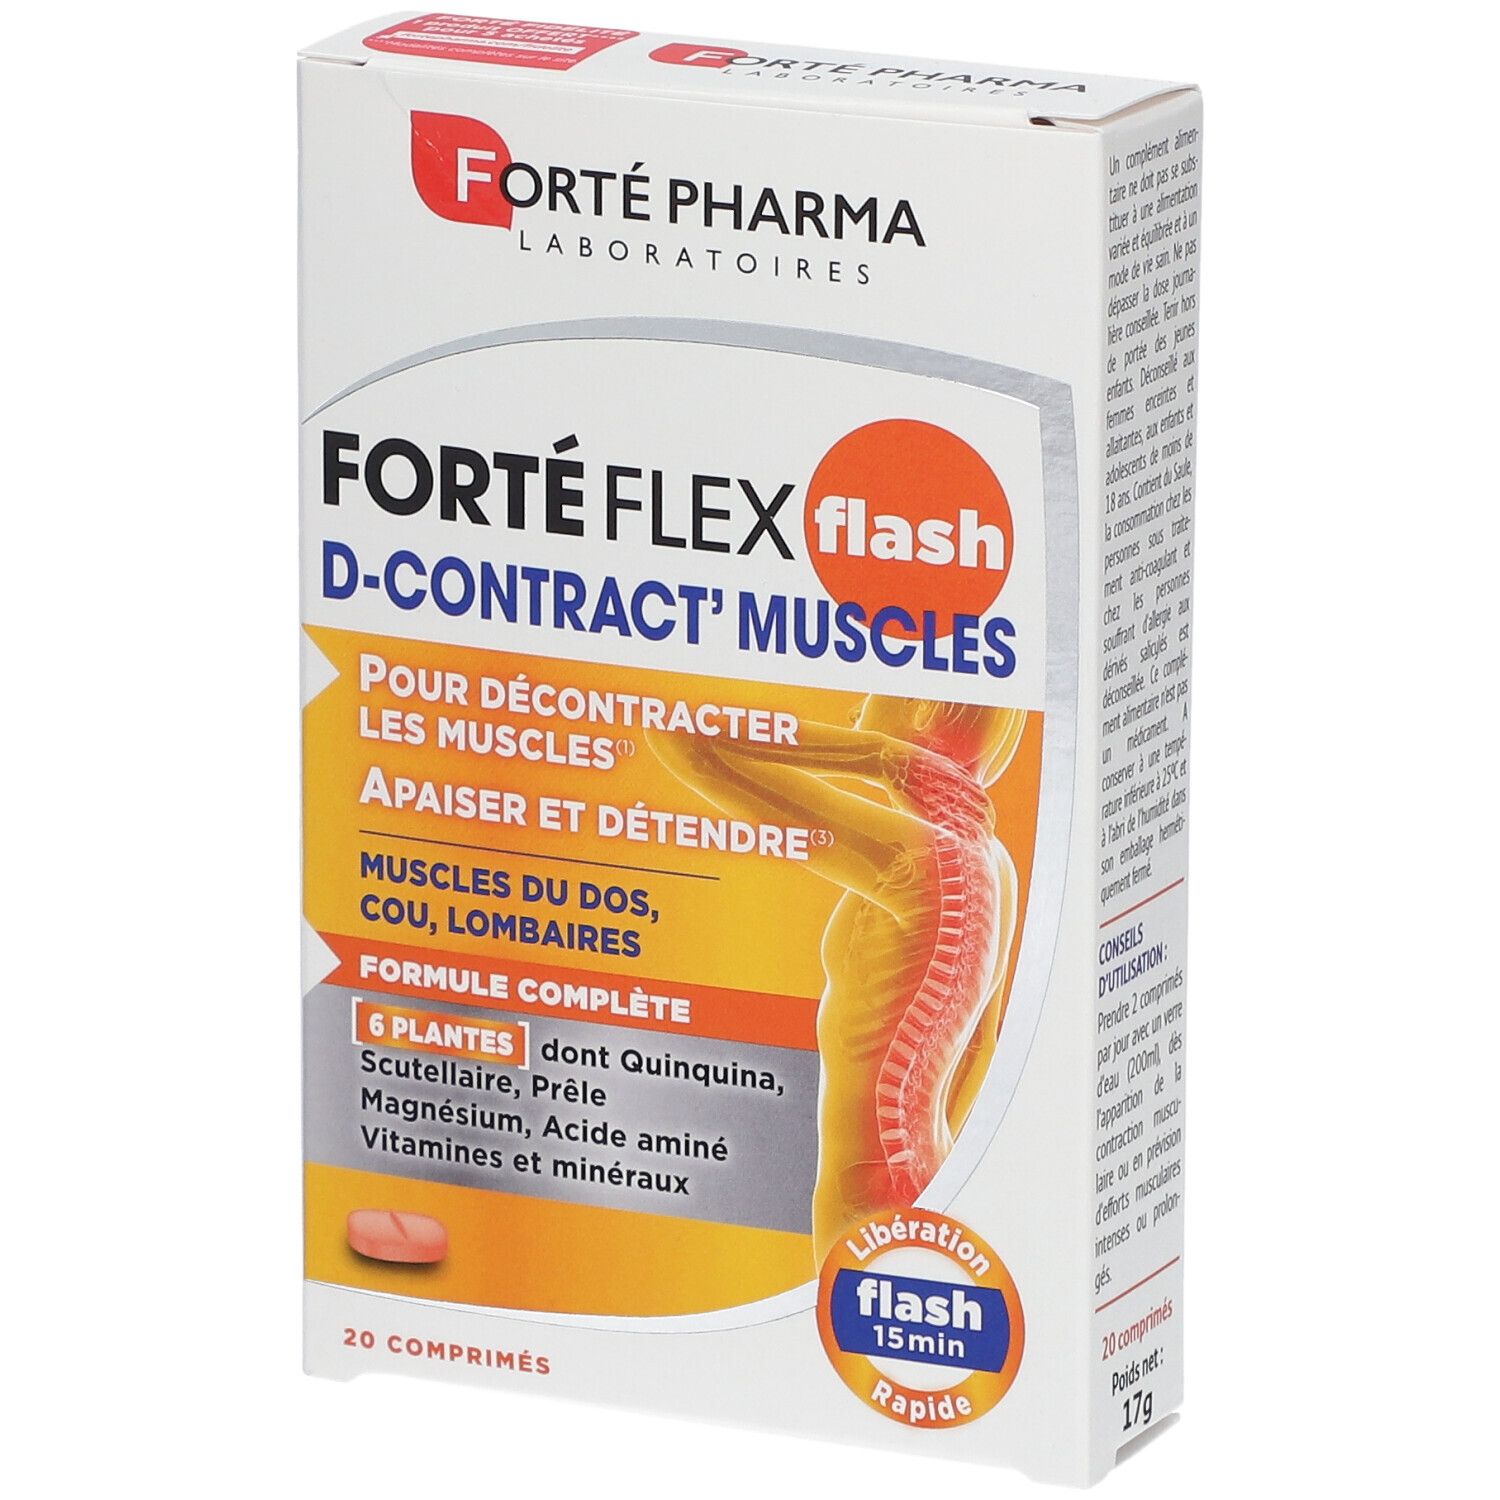 Forté Pharma Forté Flex Flash D-Contract' Muscles